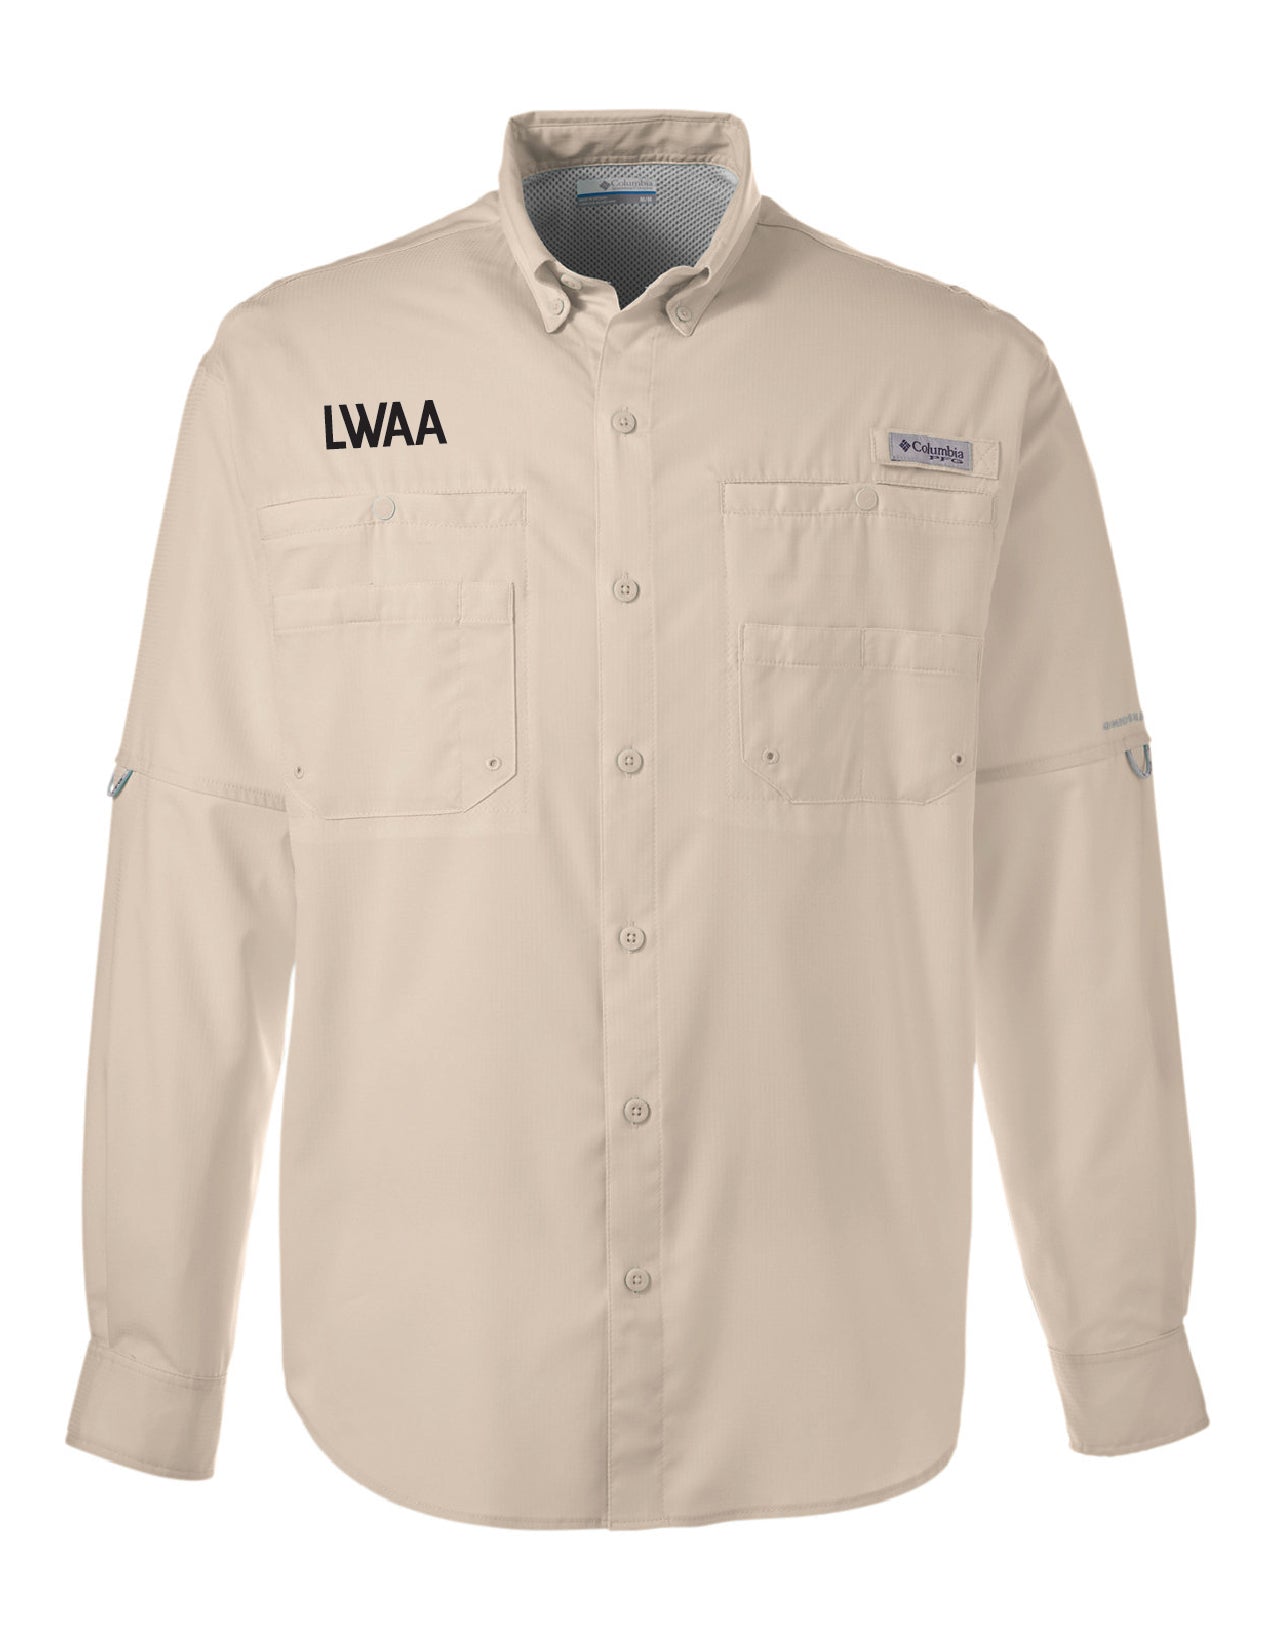 LWAA Long Sleeve Button Down Fishing Shirt